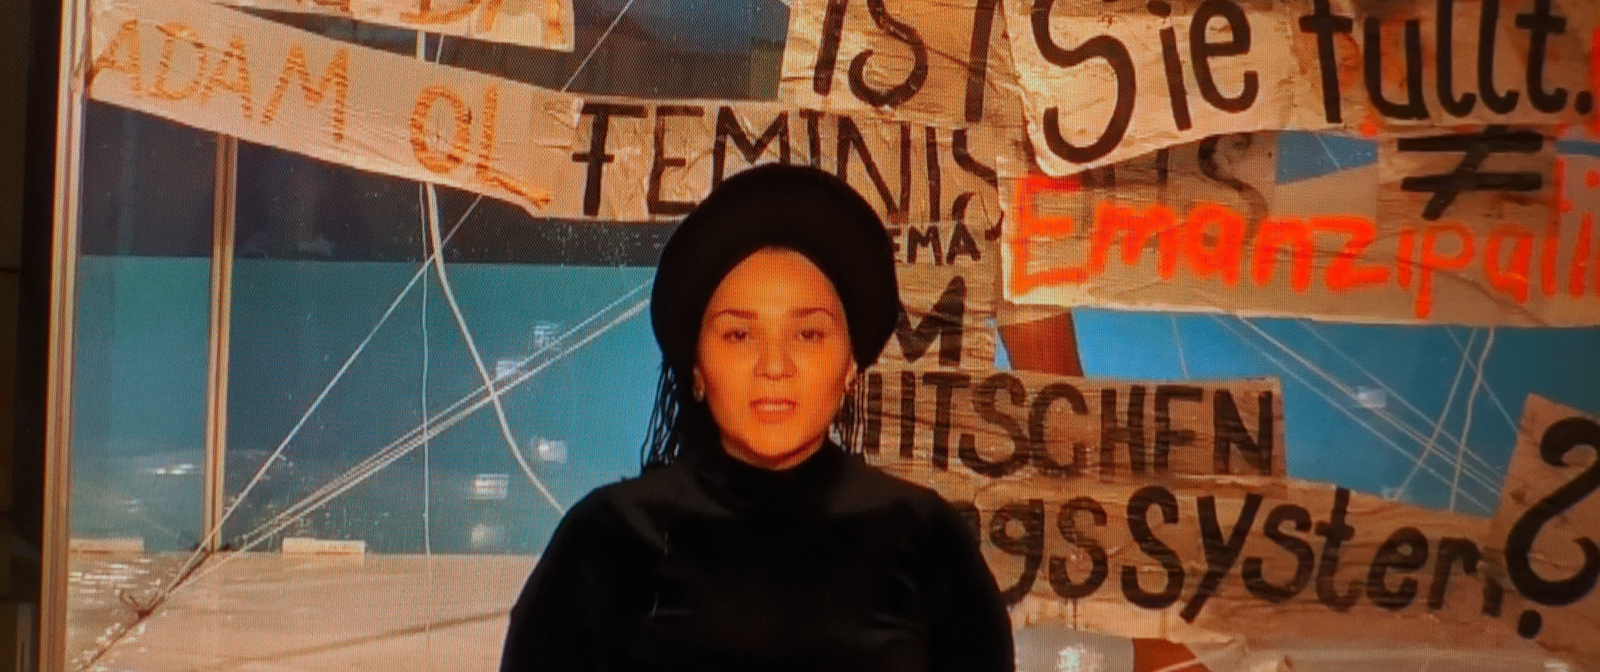 Eine Person im Zentrum des Bildes. Im Hintergrund sind mehrere Banner mit Aufschriften wie "Feminismus" und "Emanzipation" zu sehen.